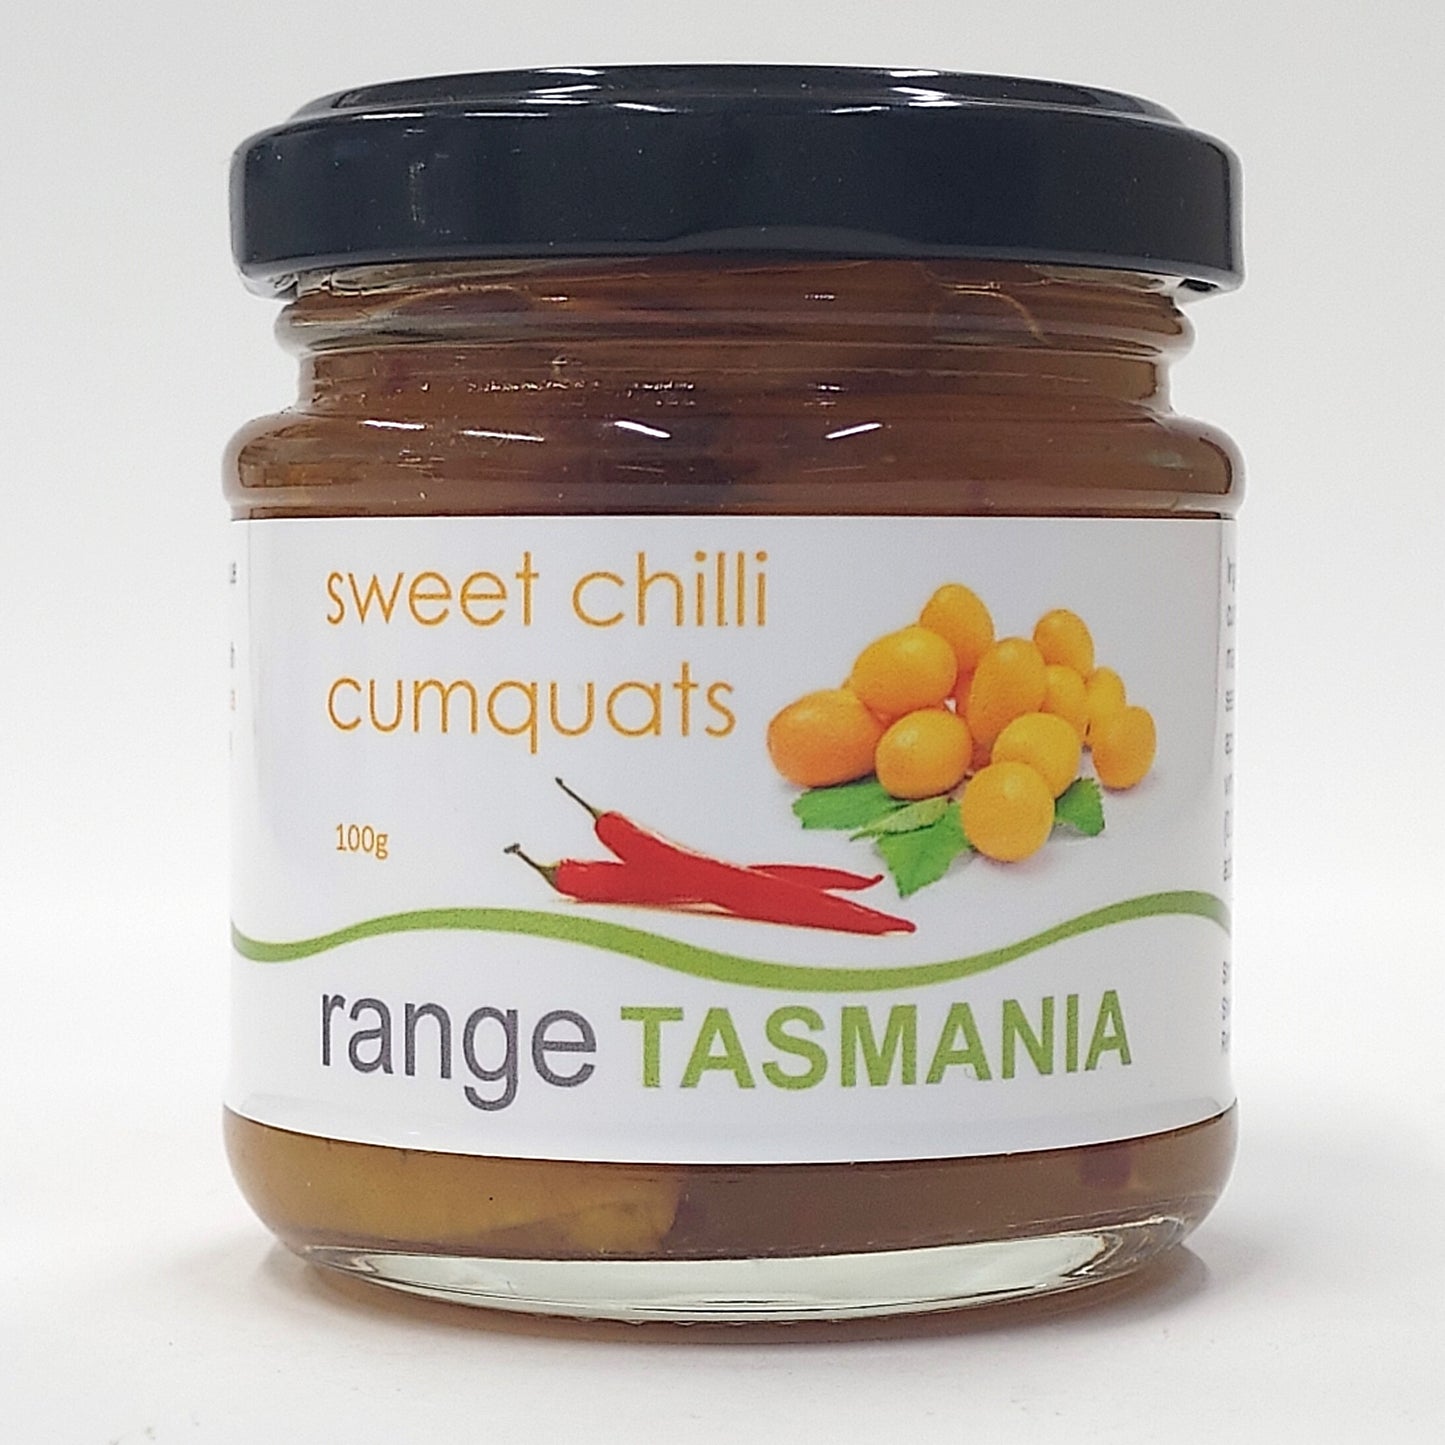 a 100 gram jar of range Tasmania sweet chilli cumquats